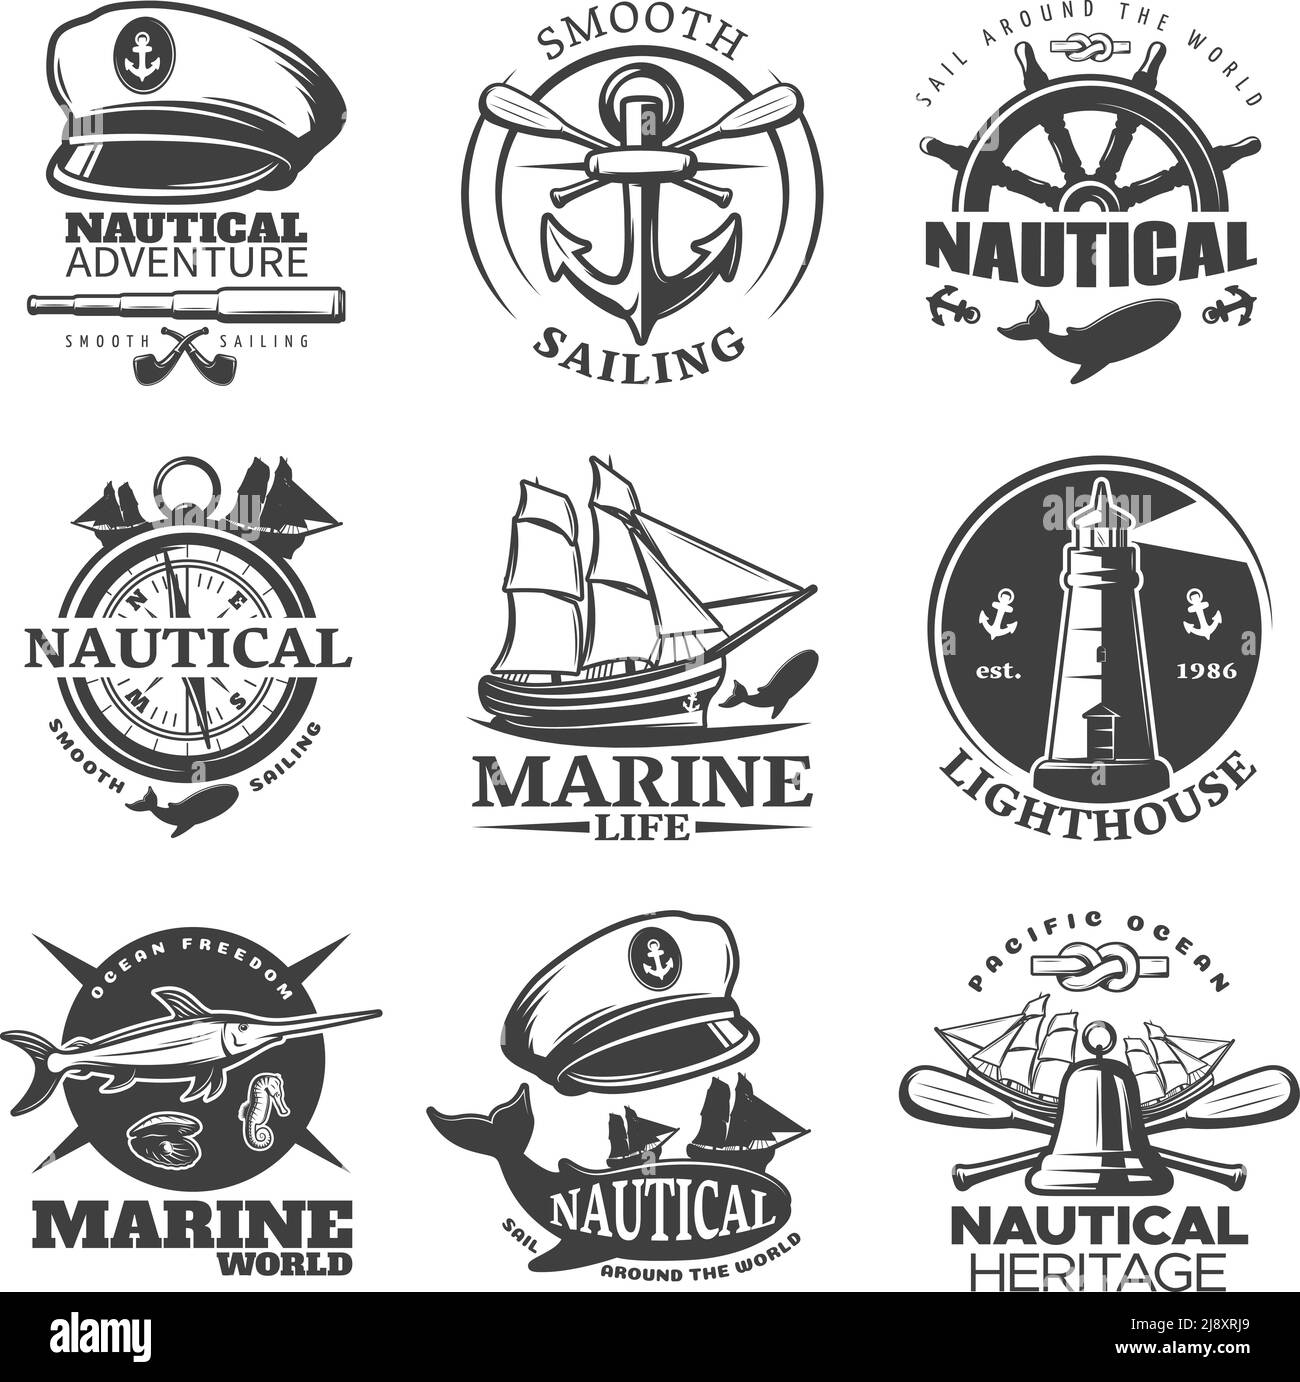 Emblème nautique avec voile autour de la vie marine mondiale lighthouse marine monde descriptions illustration vectorielle Illustration de Vecteur